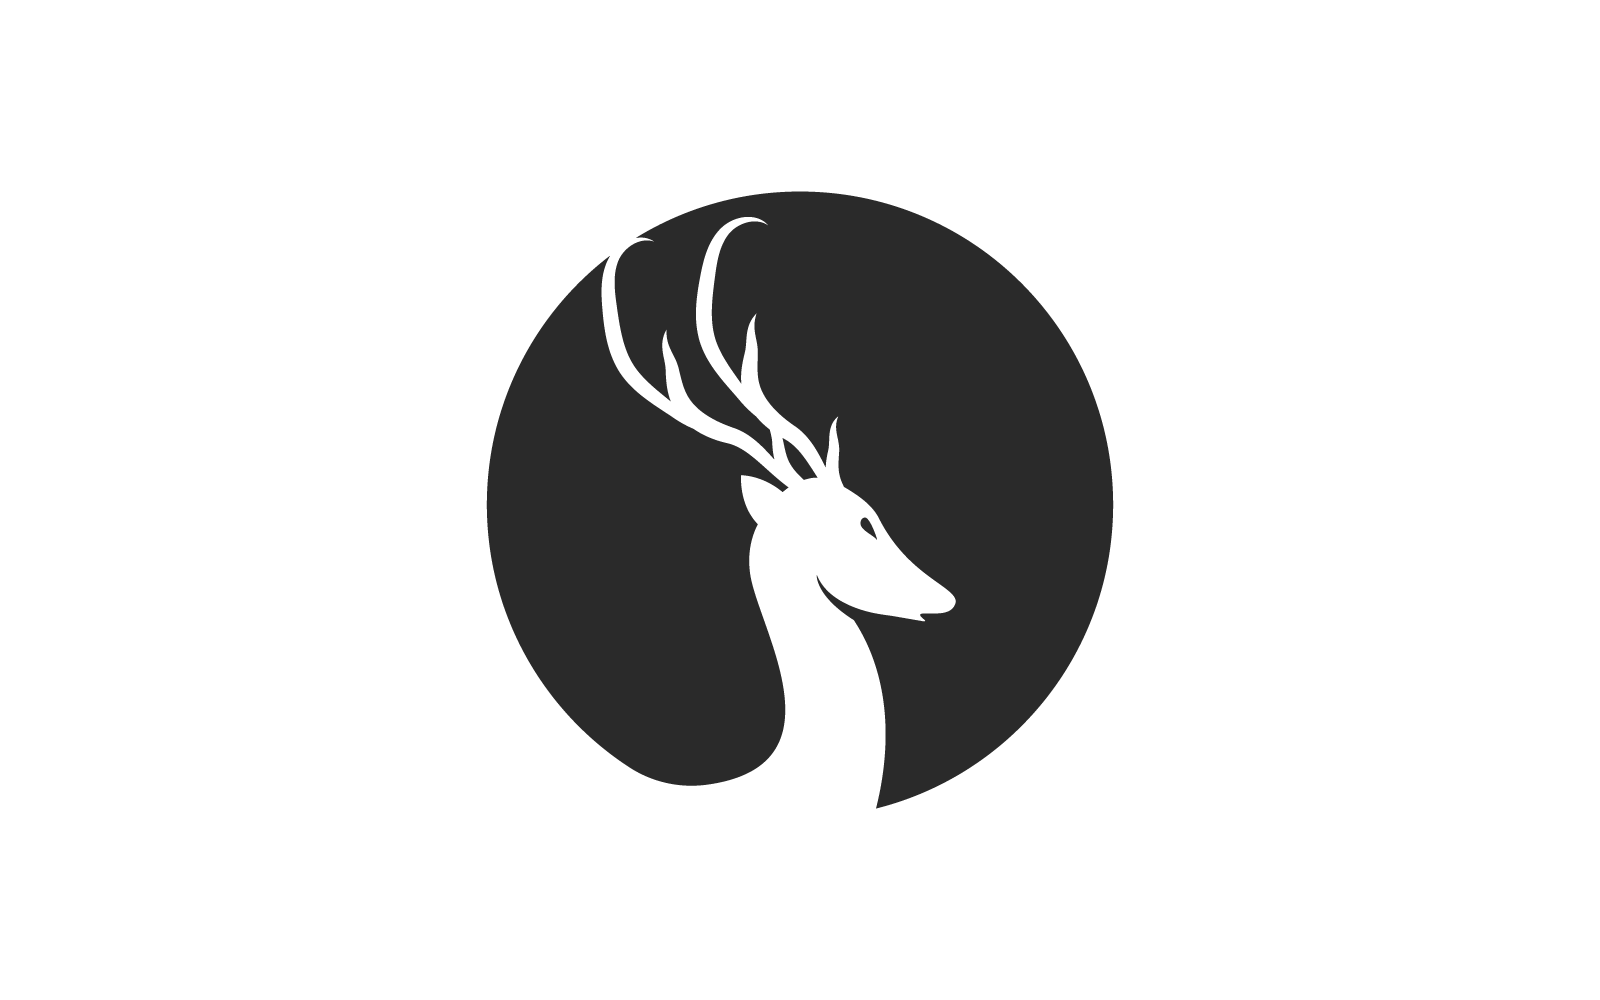 Deer antler ilustration logo design vector template